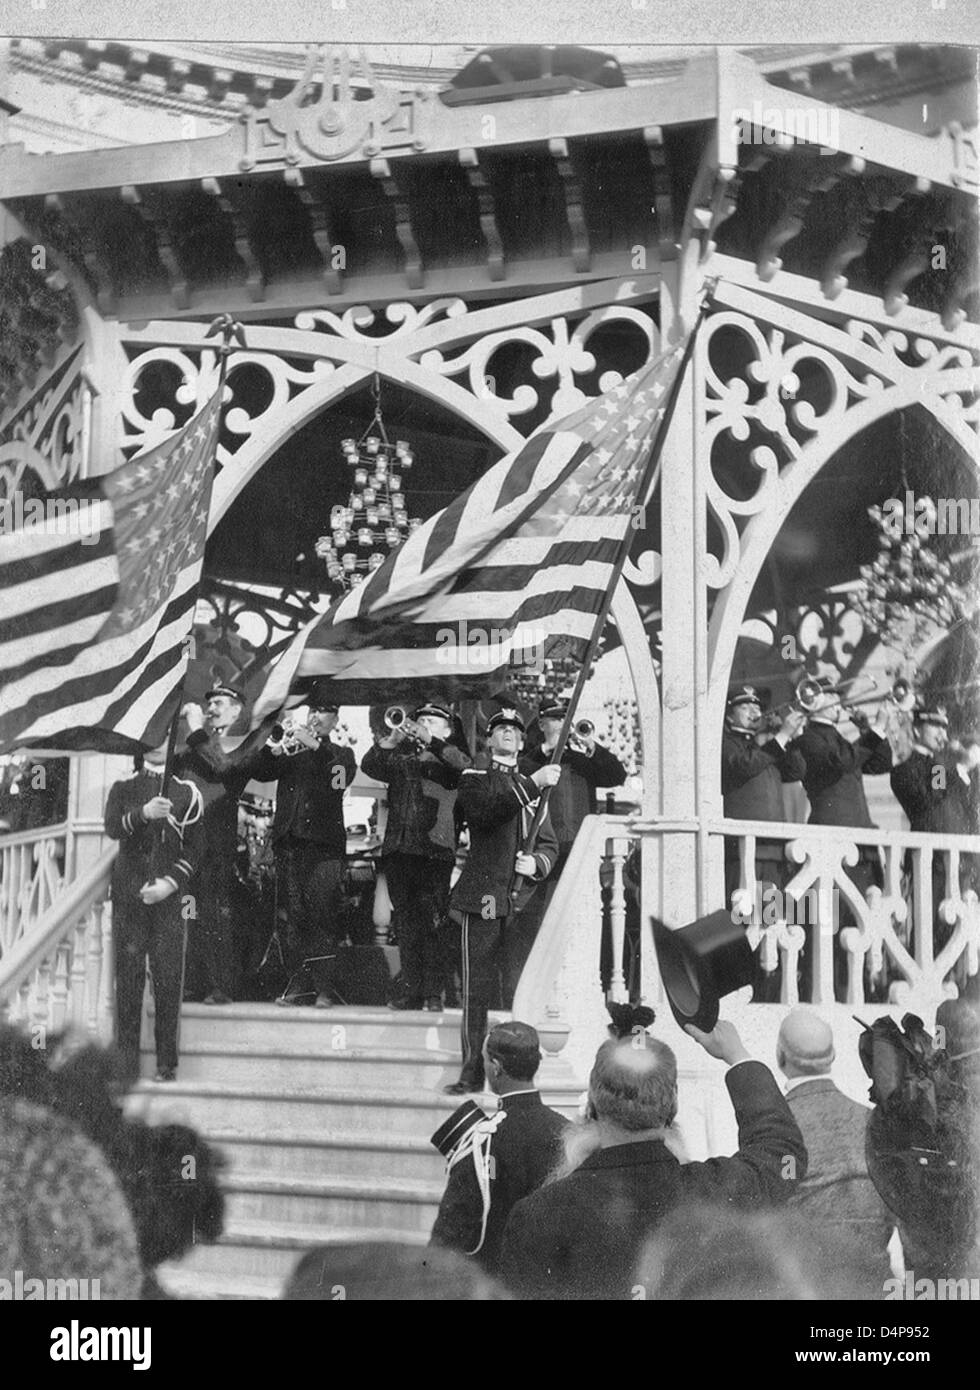 John Philip Sousa Band spielen am Musikpavillon während zwei Bandmitglieder auf Treppe stehen, winken amerikanische Flaggen - Paris Weltausstellung 1900 Stockfoto